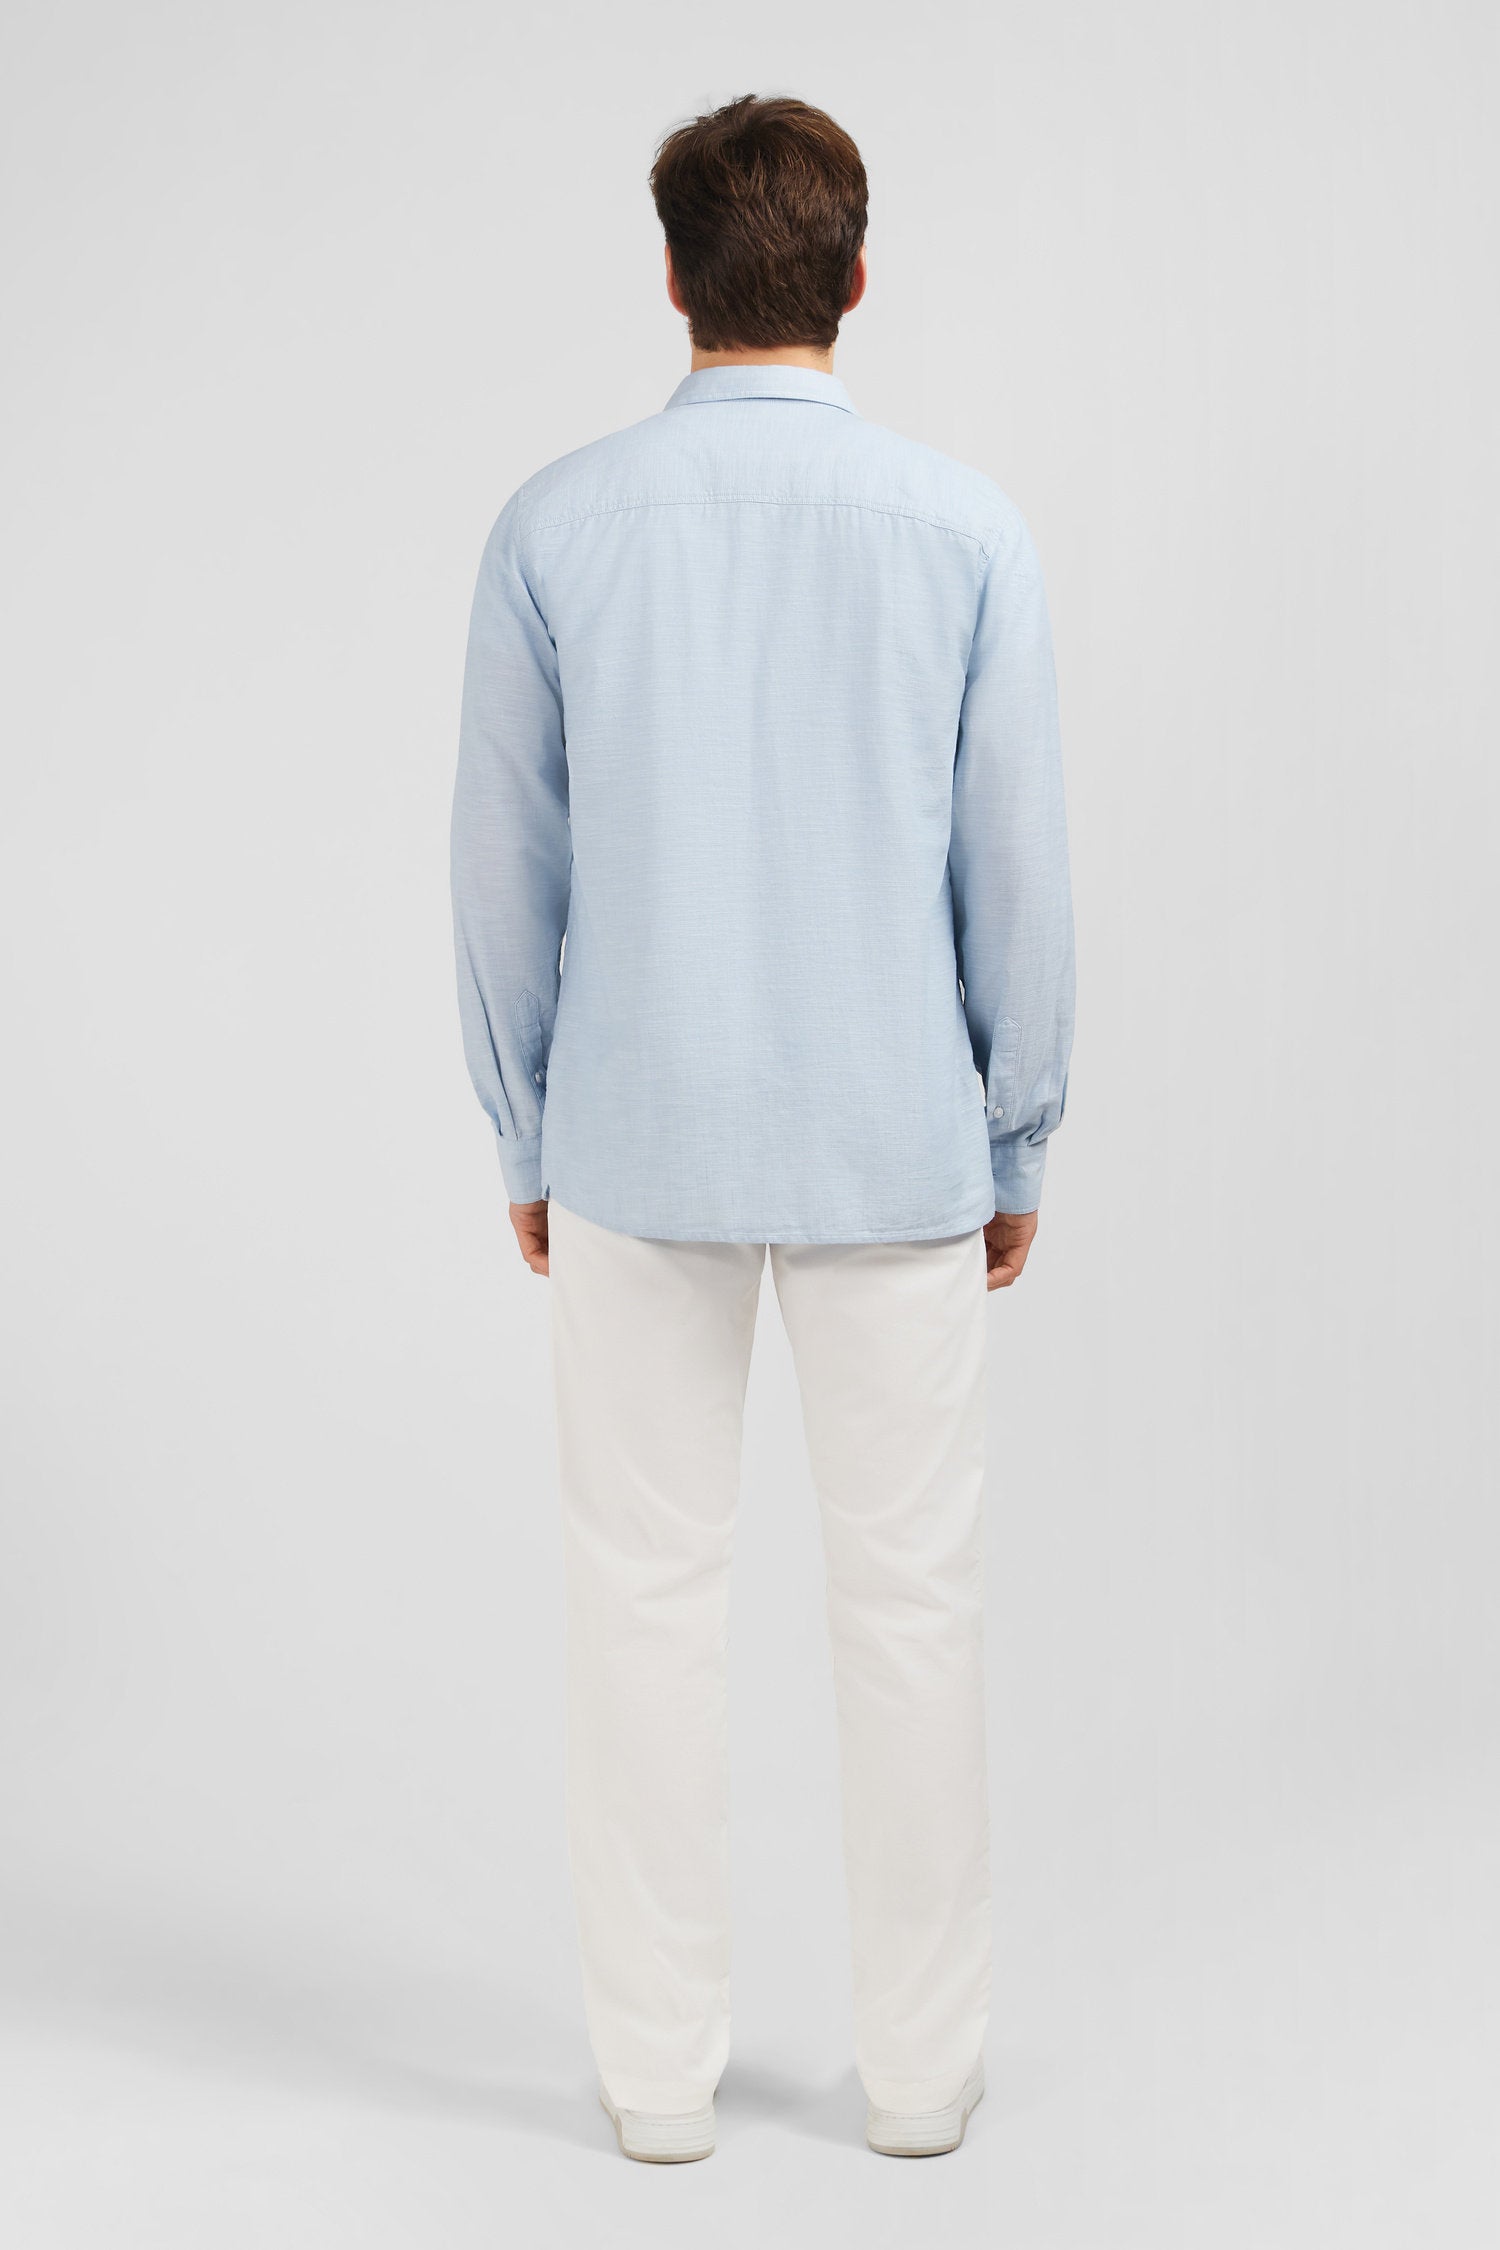 Light Blue Shirt In Linen_E24Checl0018_Blc3_03